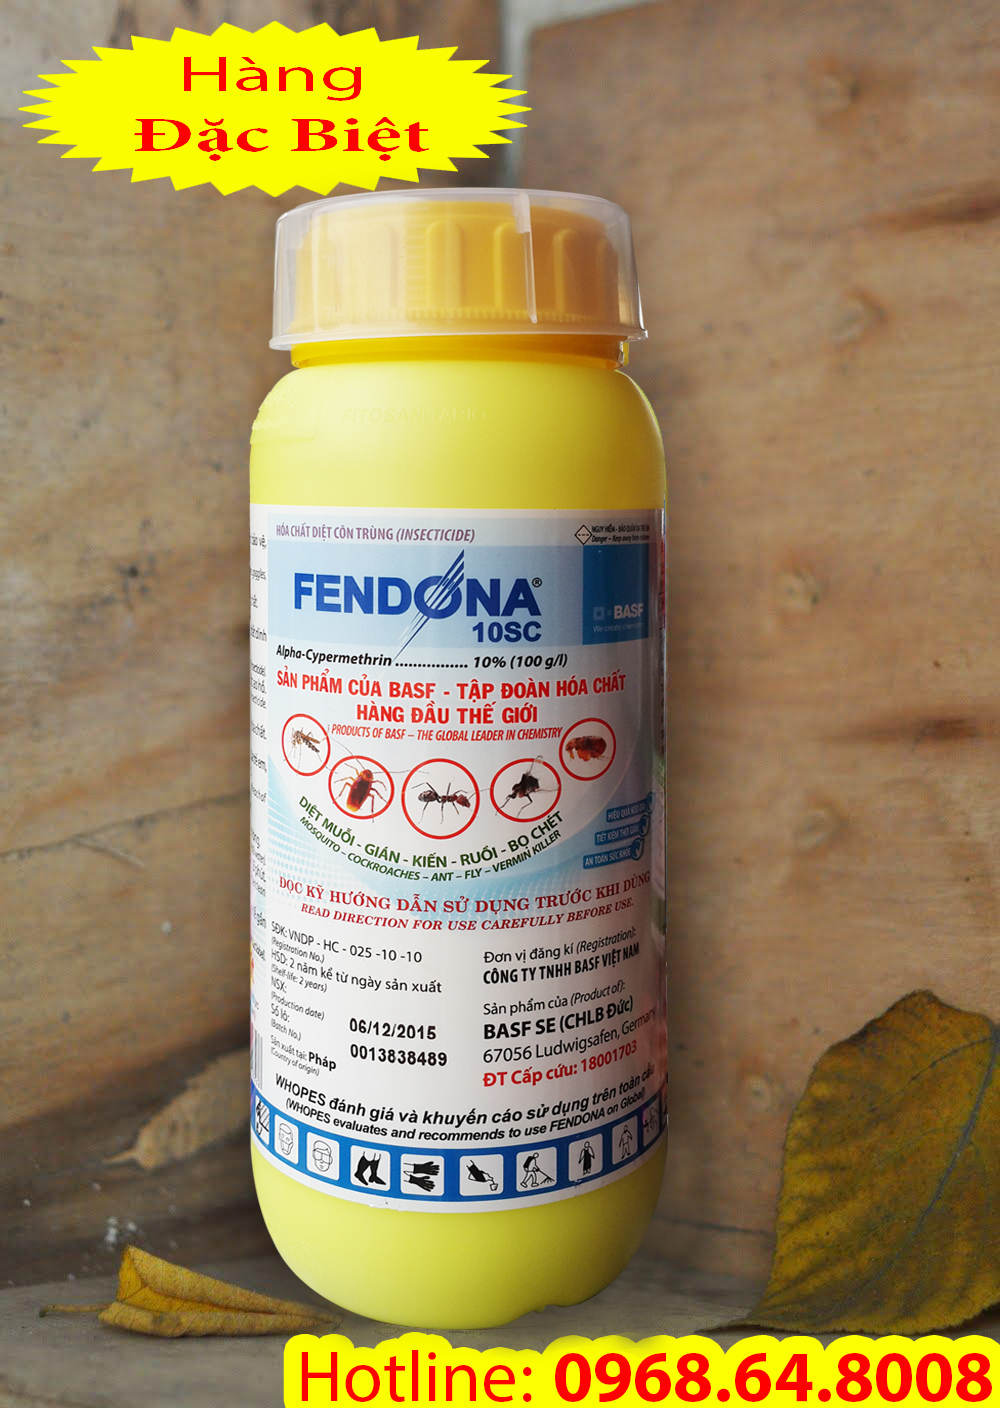 Fendona 10SC (500ml) - (BAFS - CHLB ĐỨC) - Sản xuất tại PHÁP - Thuốc diệt côn trùng, muỗi, gián, ruồi, kiến, bọ chét...